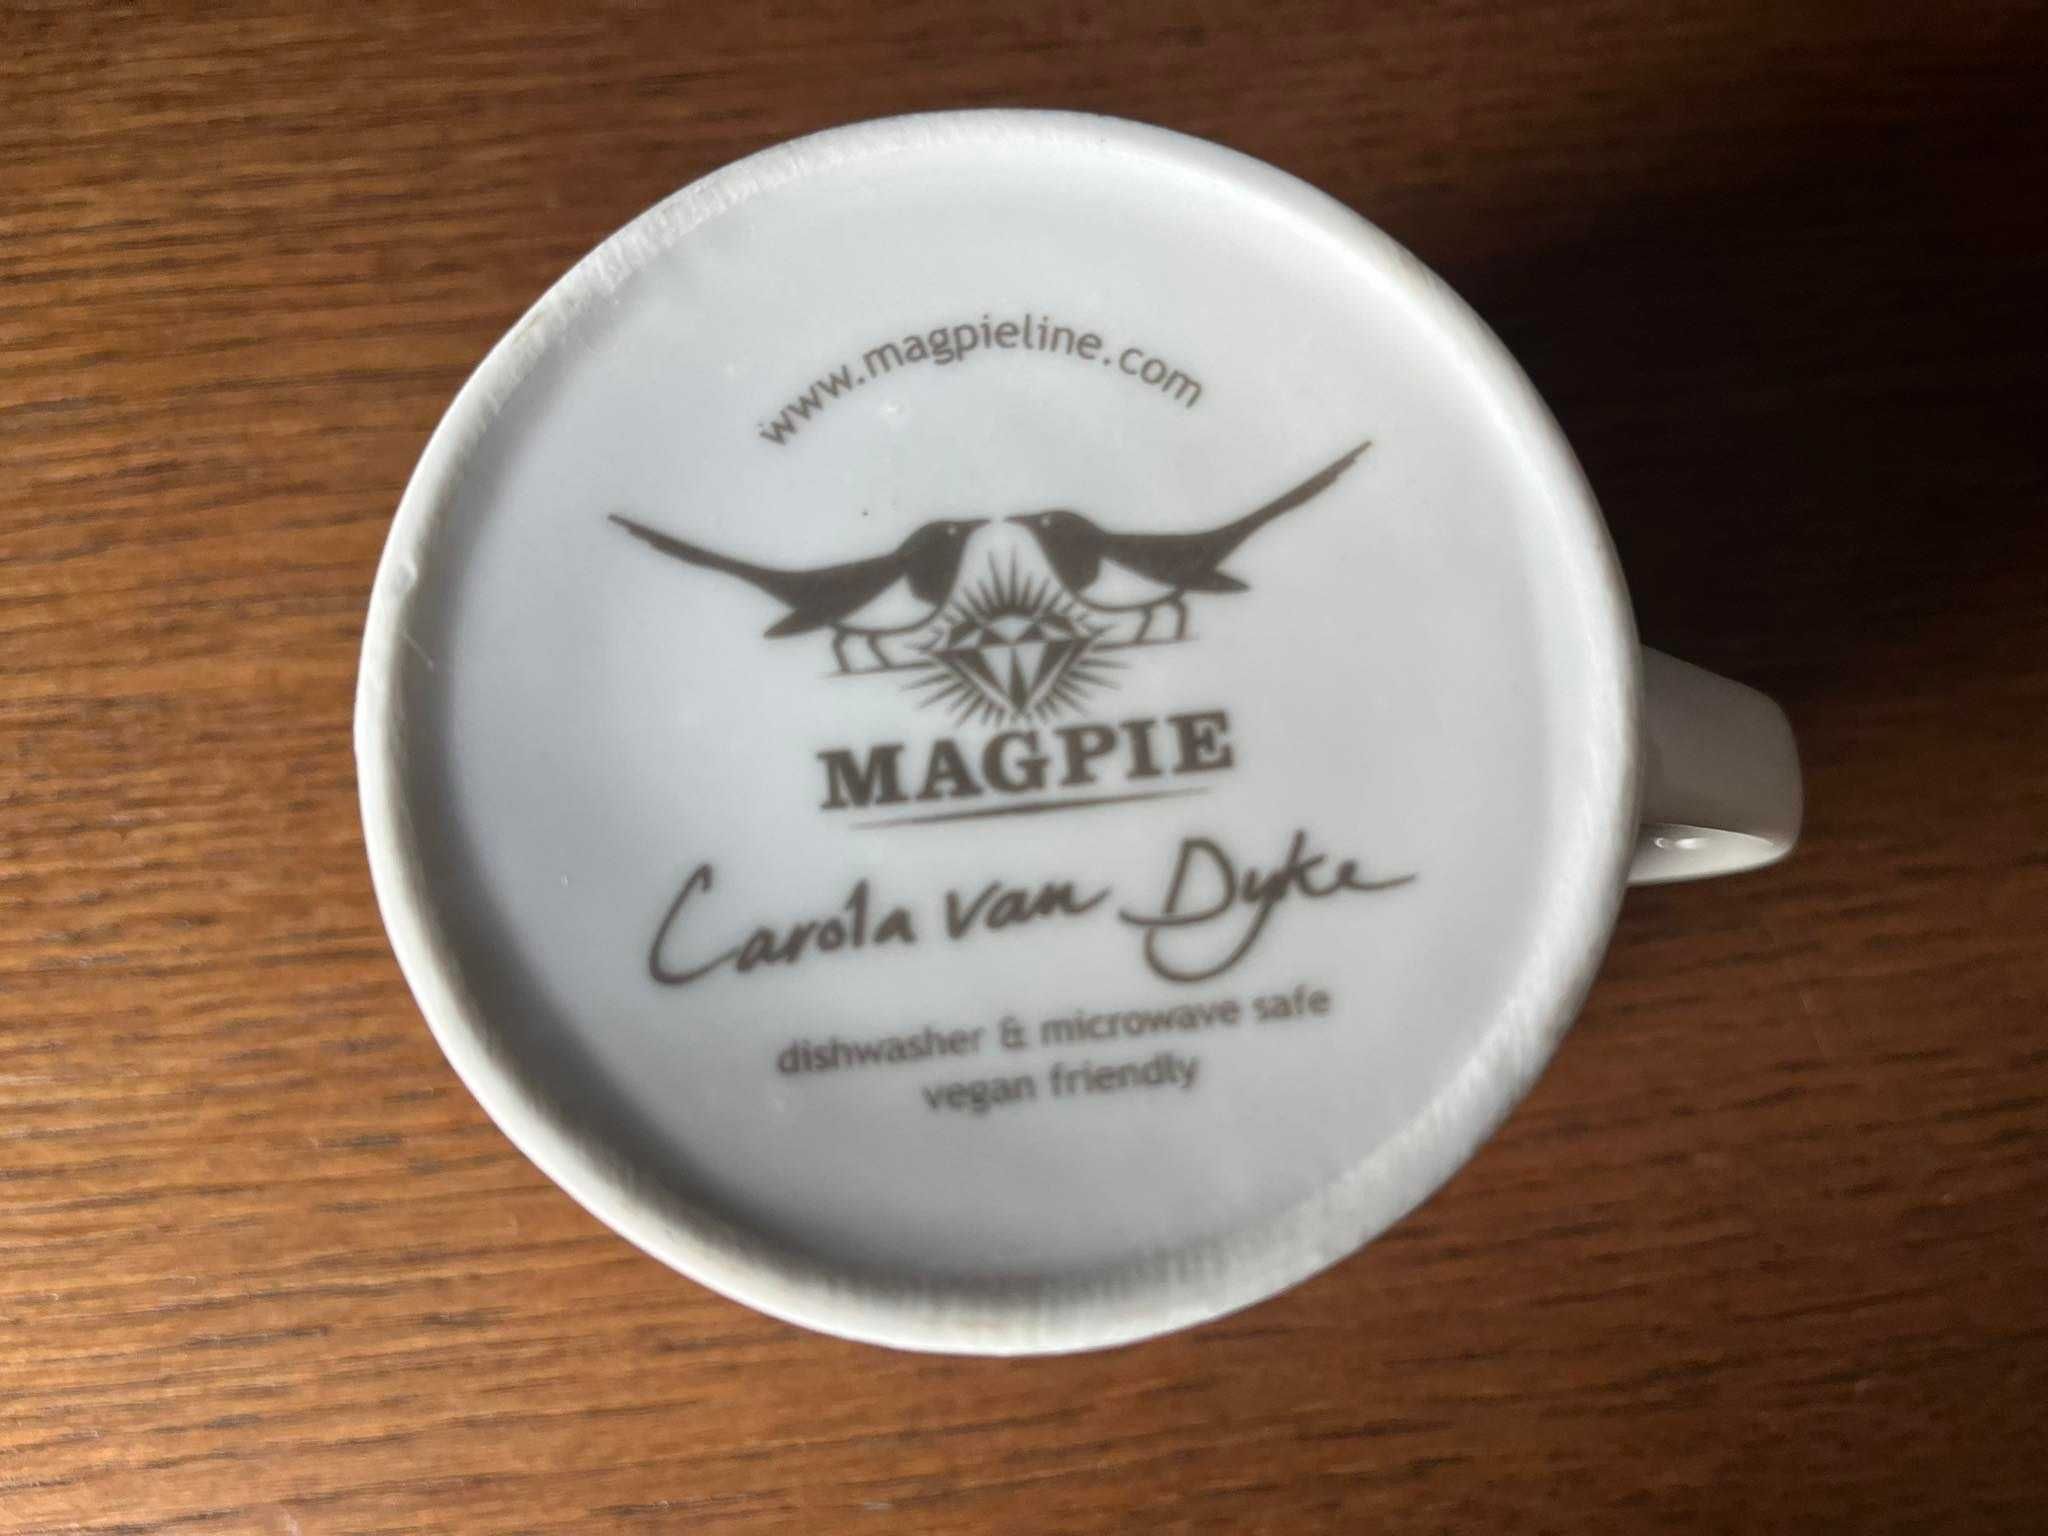 Borsuk kubek Magpie Carola van Dyke